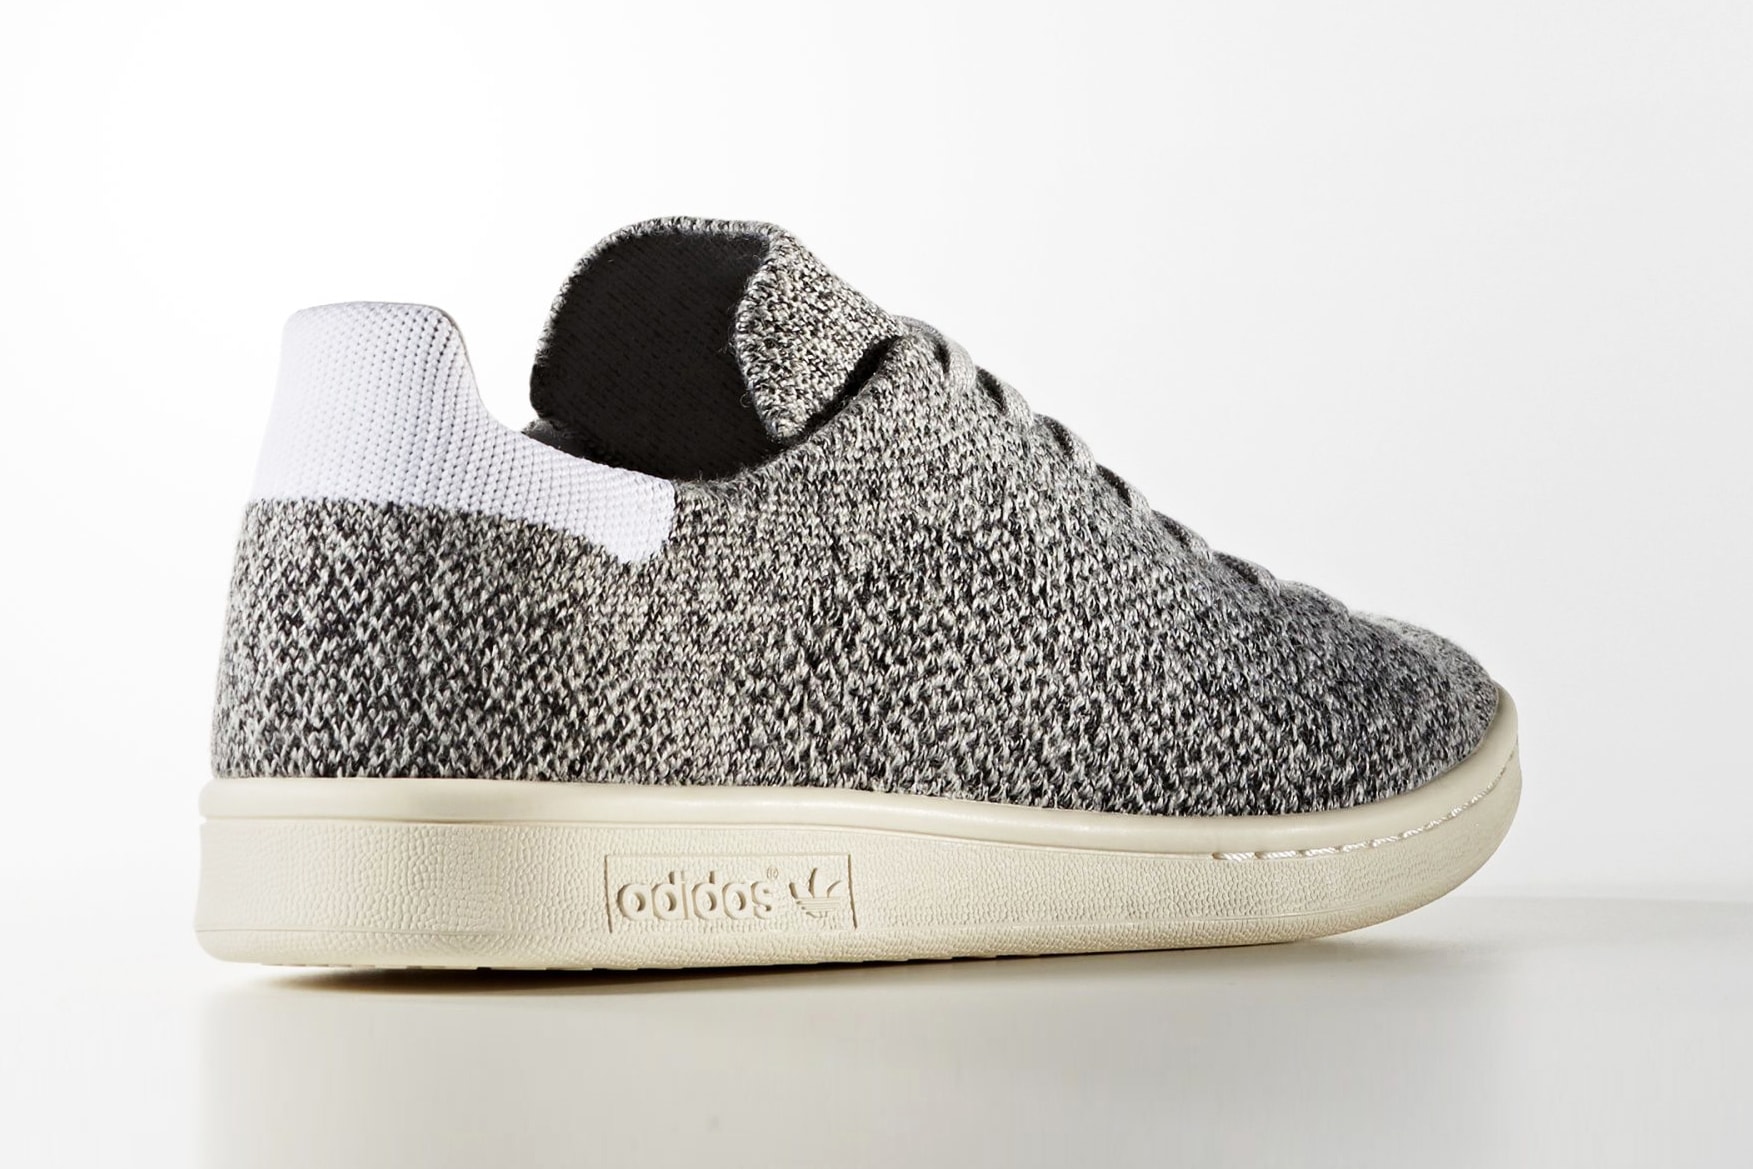 adidas originals stan smith wool primeknit in grey color